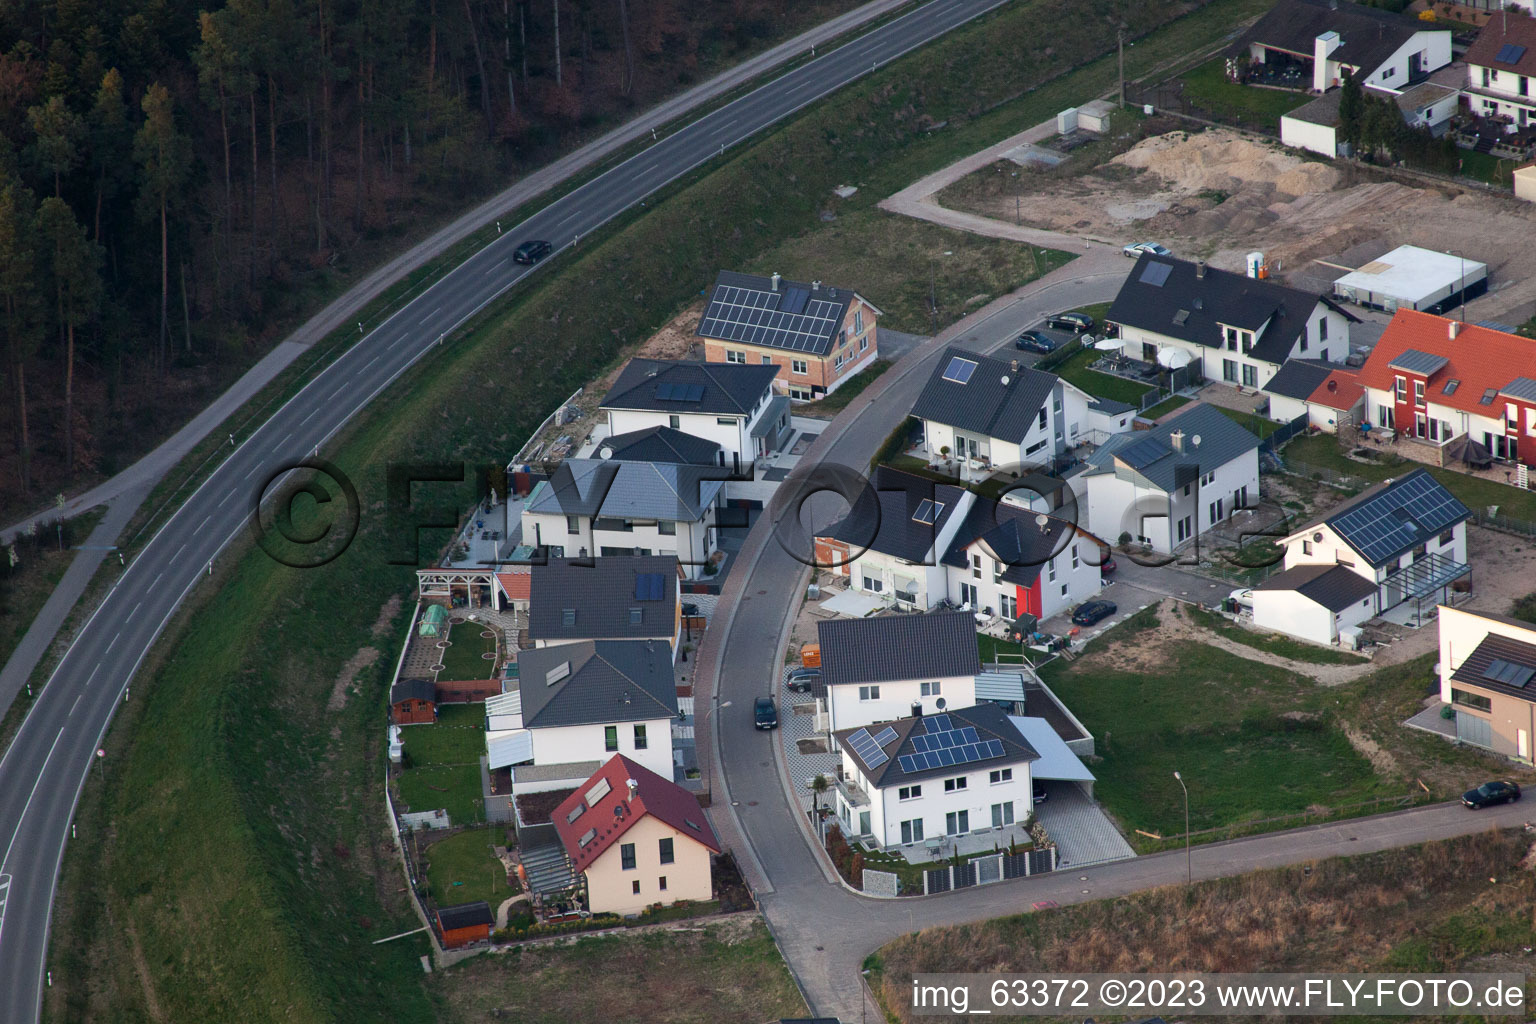 Jockgrim dans le département Rhénanie-Palatinat, Allemagne vu d'un drone